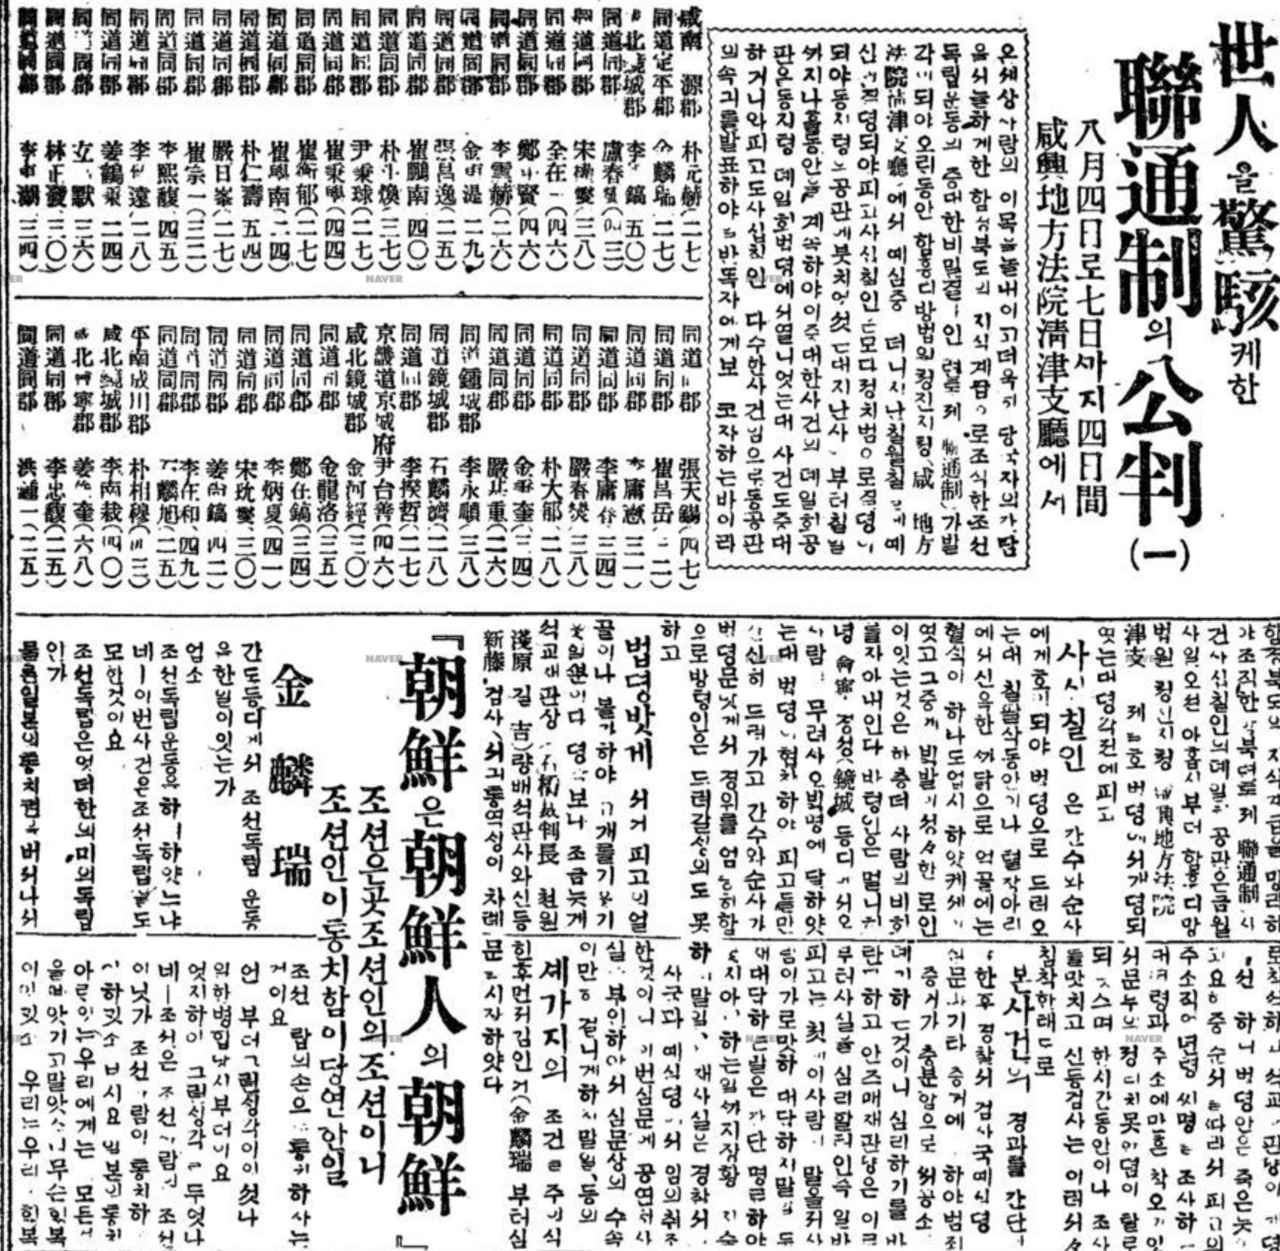 1920년 임정의 연통제 조직은 면지역까지 조직된 지방자치제도였다. 출처 : 동아일보( 1920.08.22.)